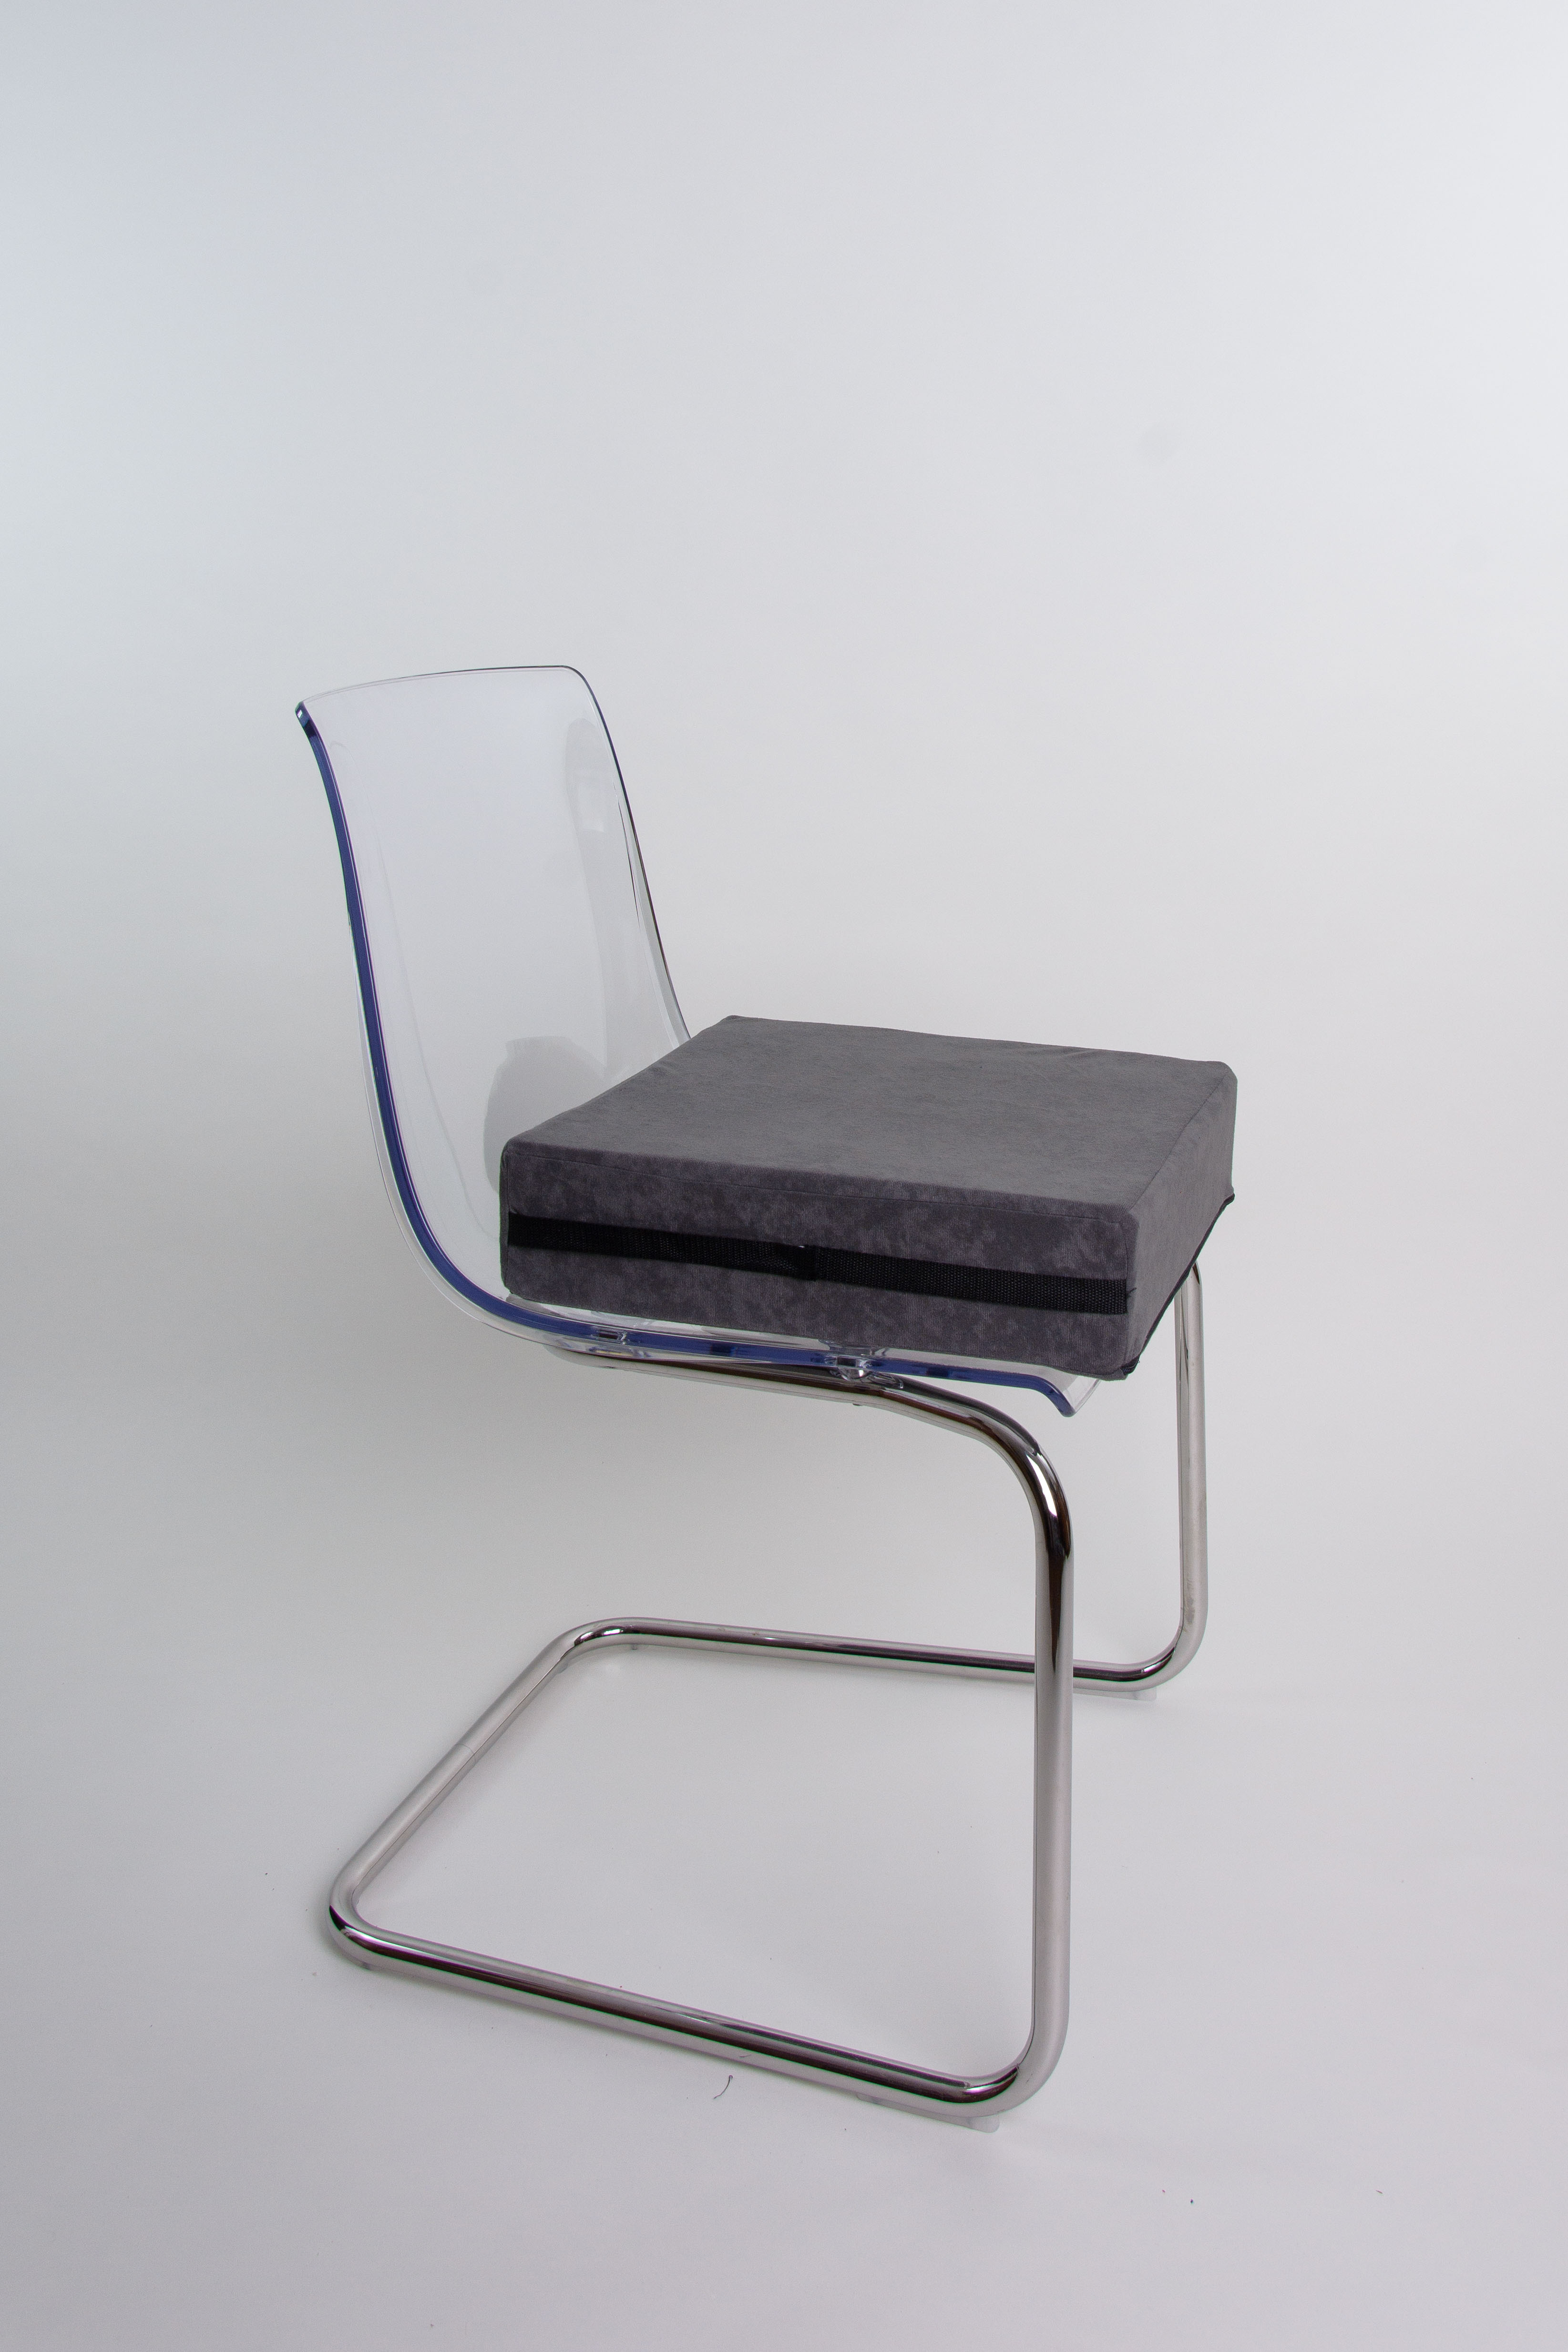  Schwar Textilien Orthopädische Stuhlerhöhung Sitzblock  Bodenkissen Stuhlkissen Sitzerhöhung Stuhl Farbe Braun